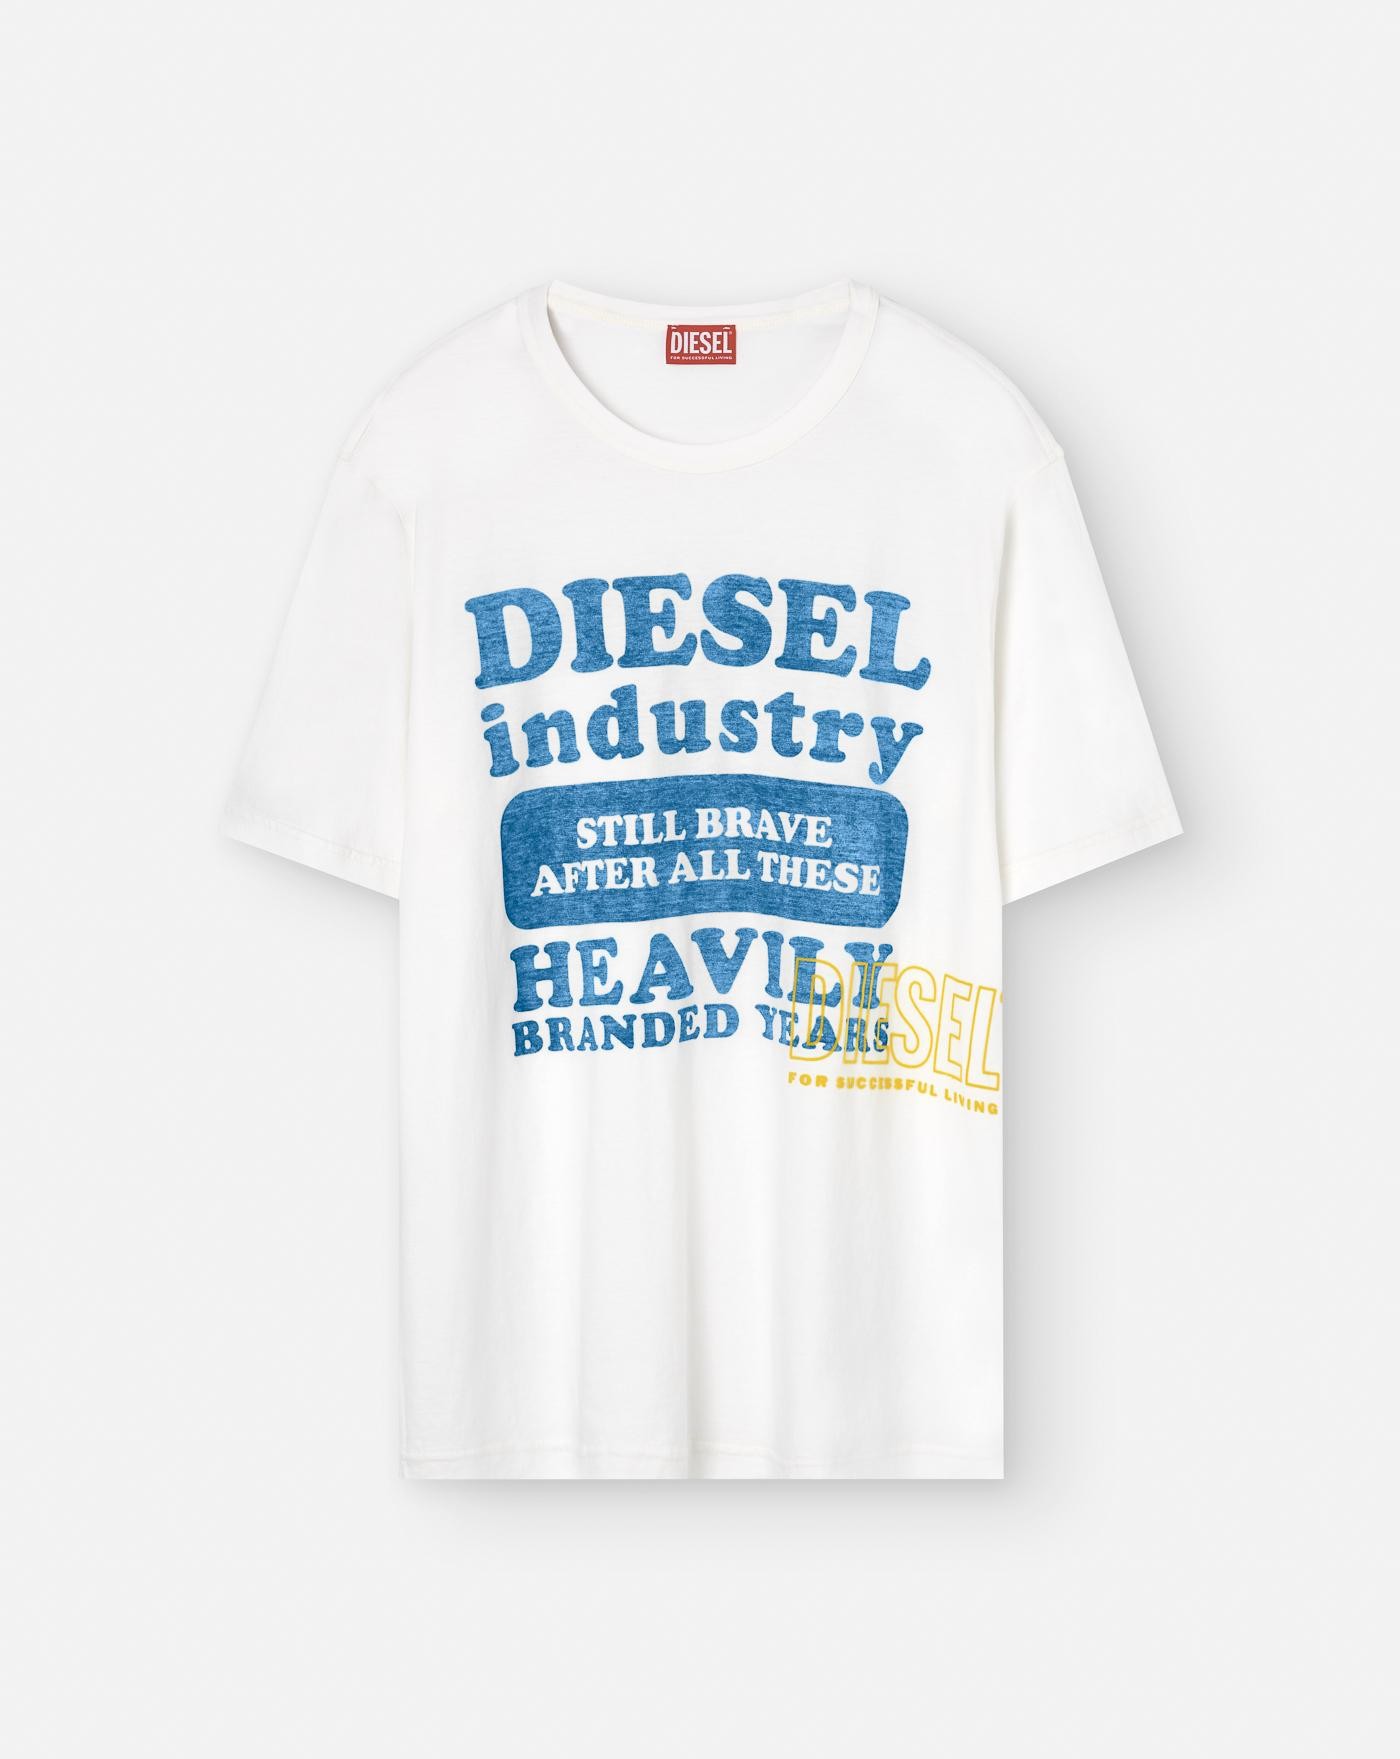 Camiseta Diesel Industry